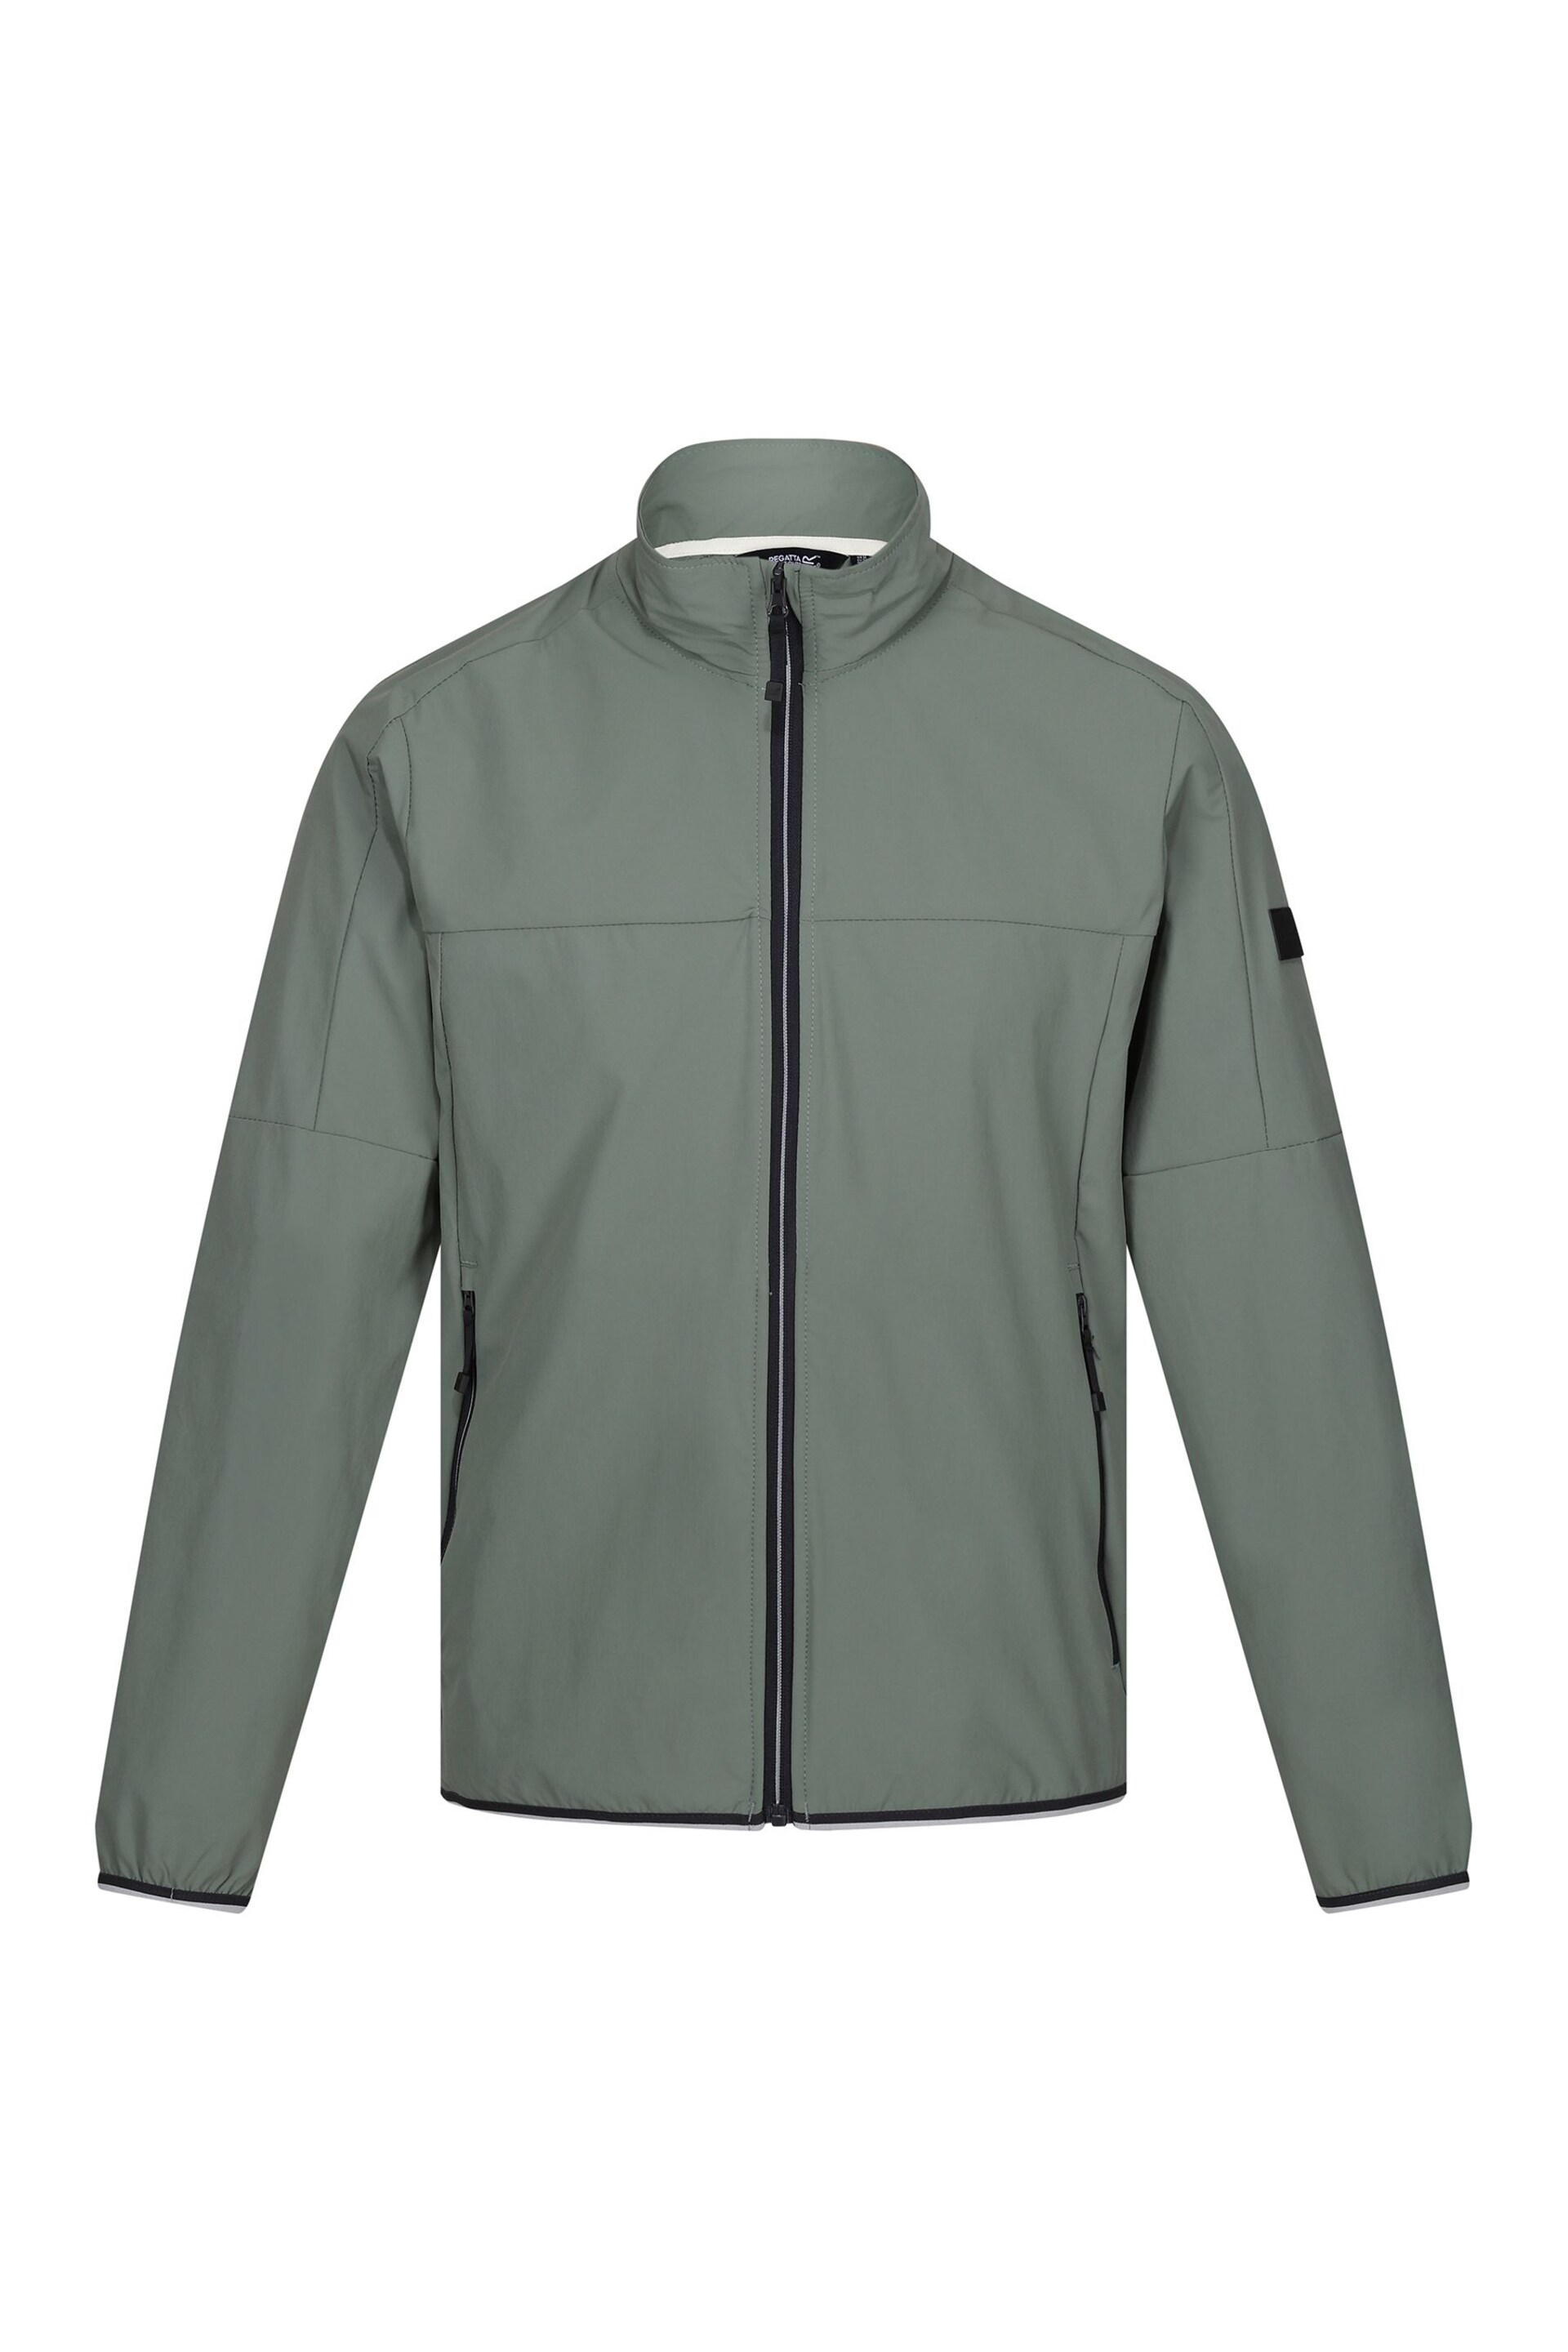 Regatta Green Prestfield Full Zip Softshell Jacket - Image 5 of 7